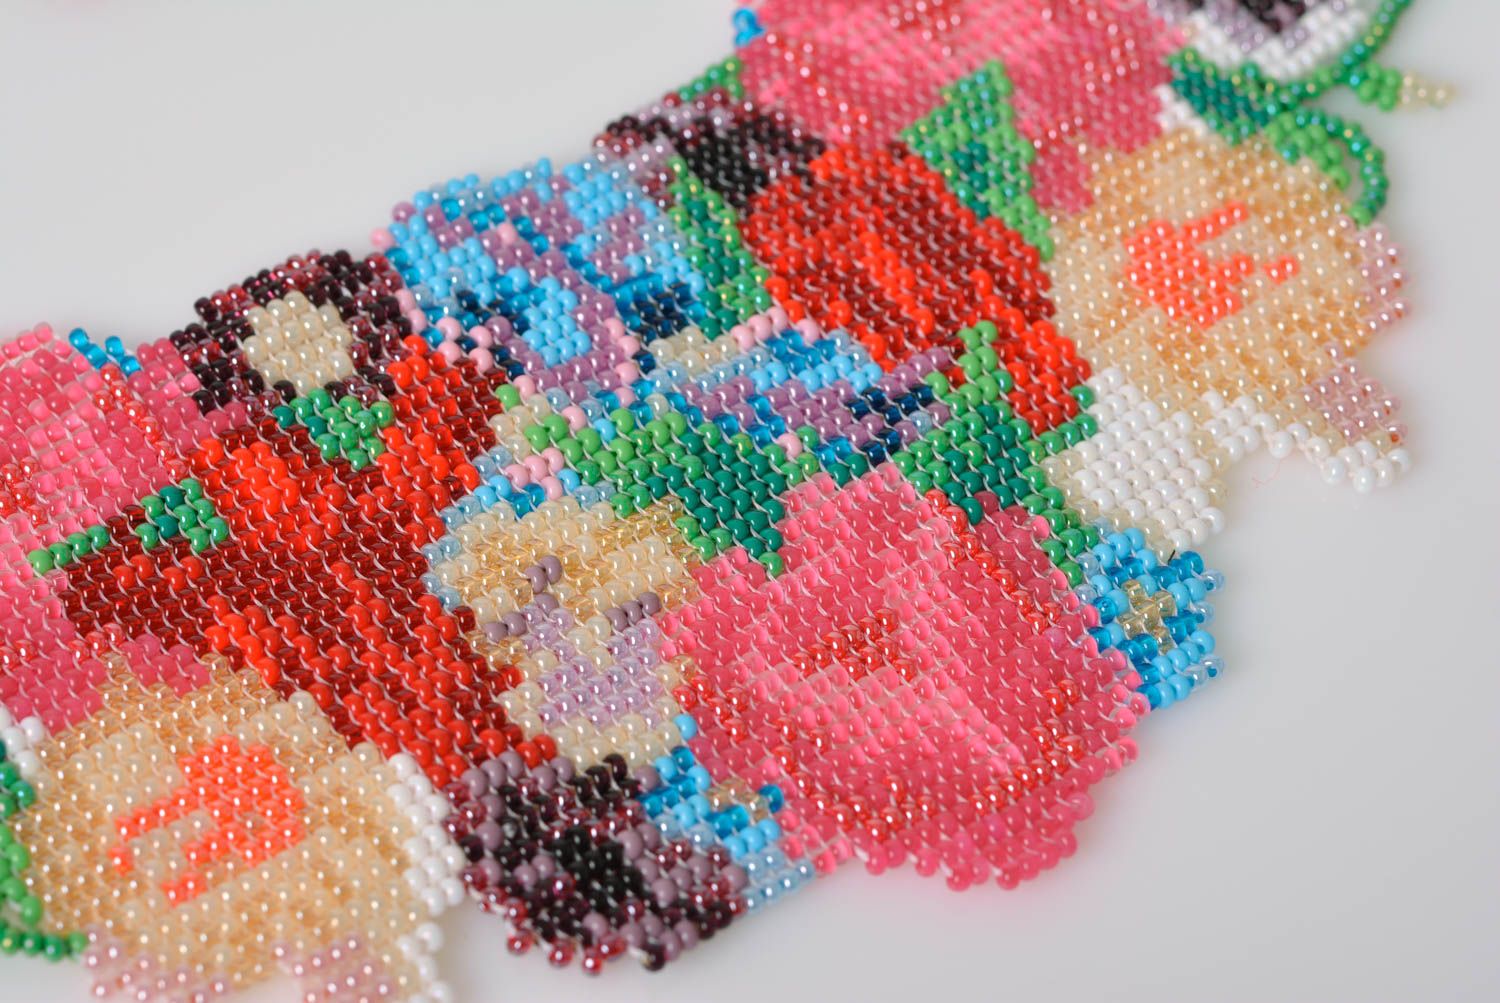 Ожерелье из бисера в технике ткачества разноцветное нежное красивое хэнд мейд фото 2